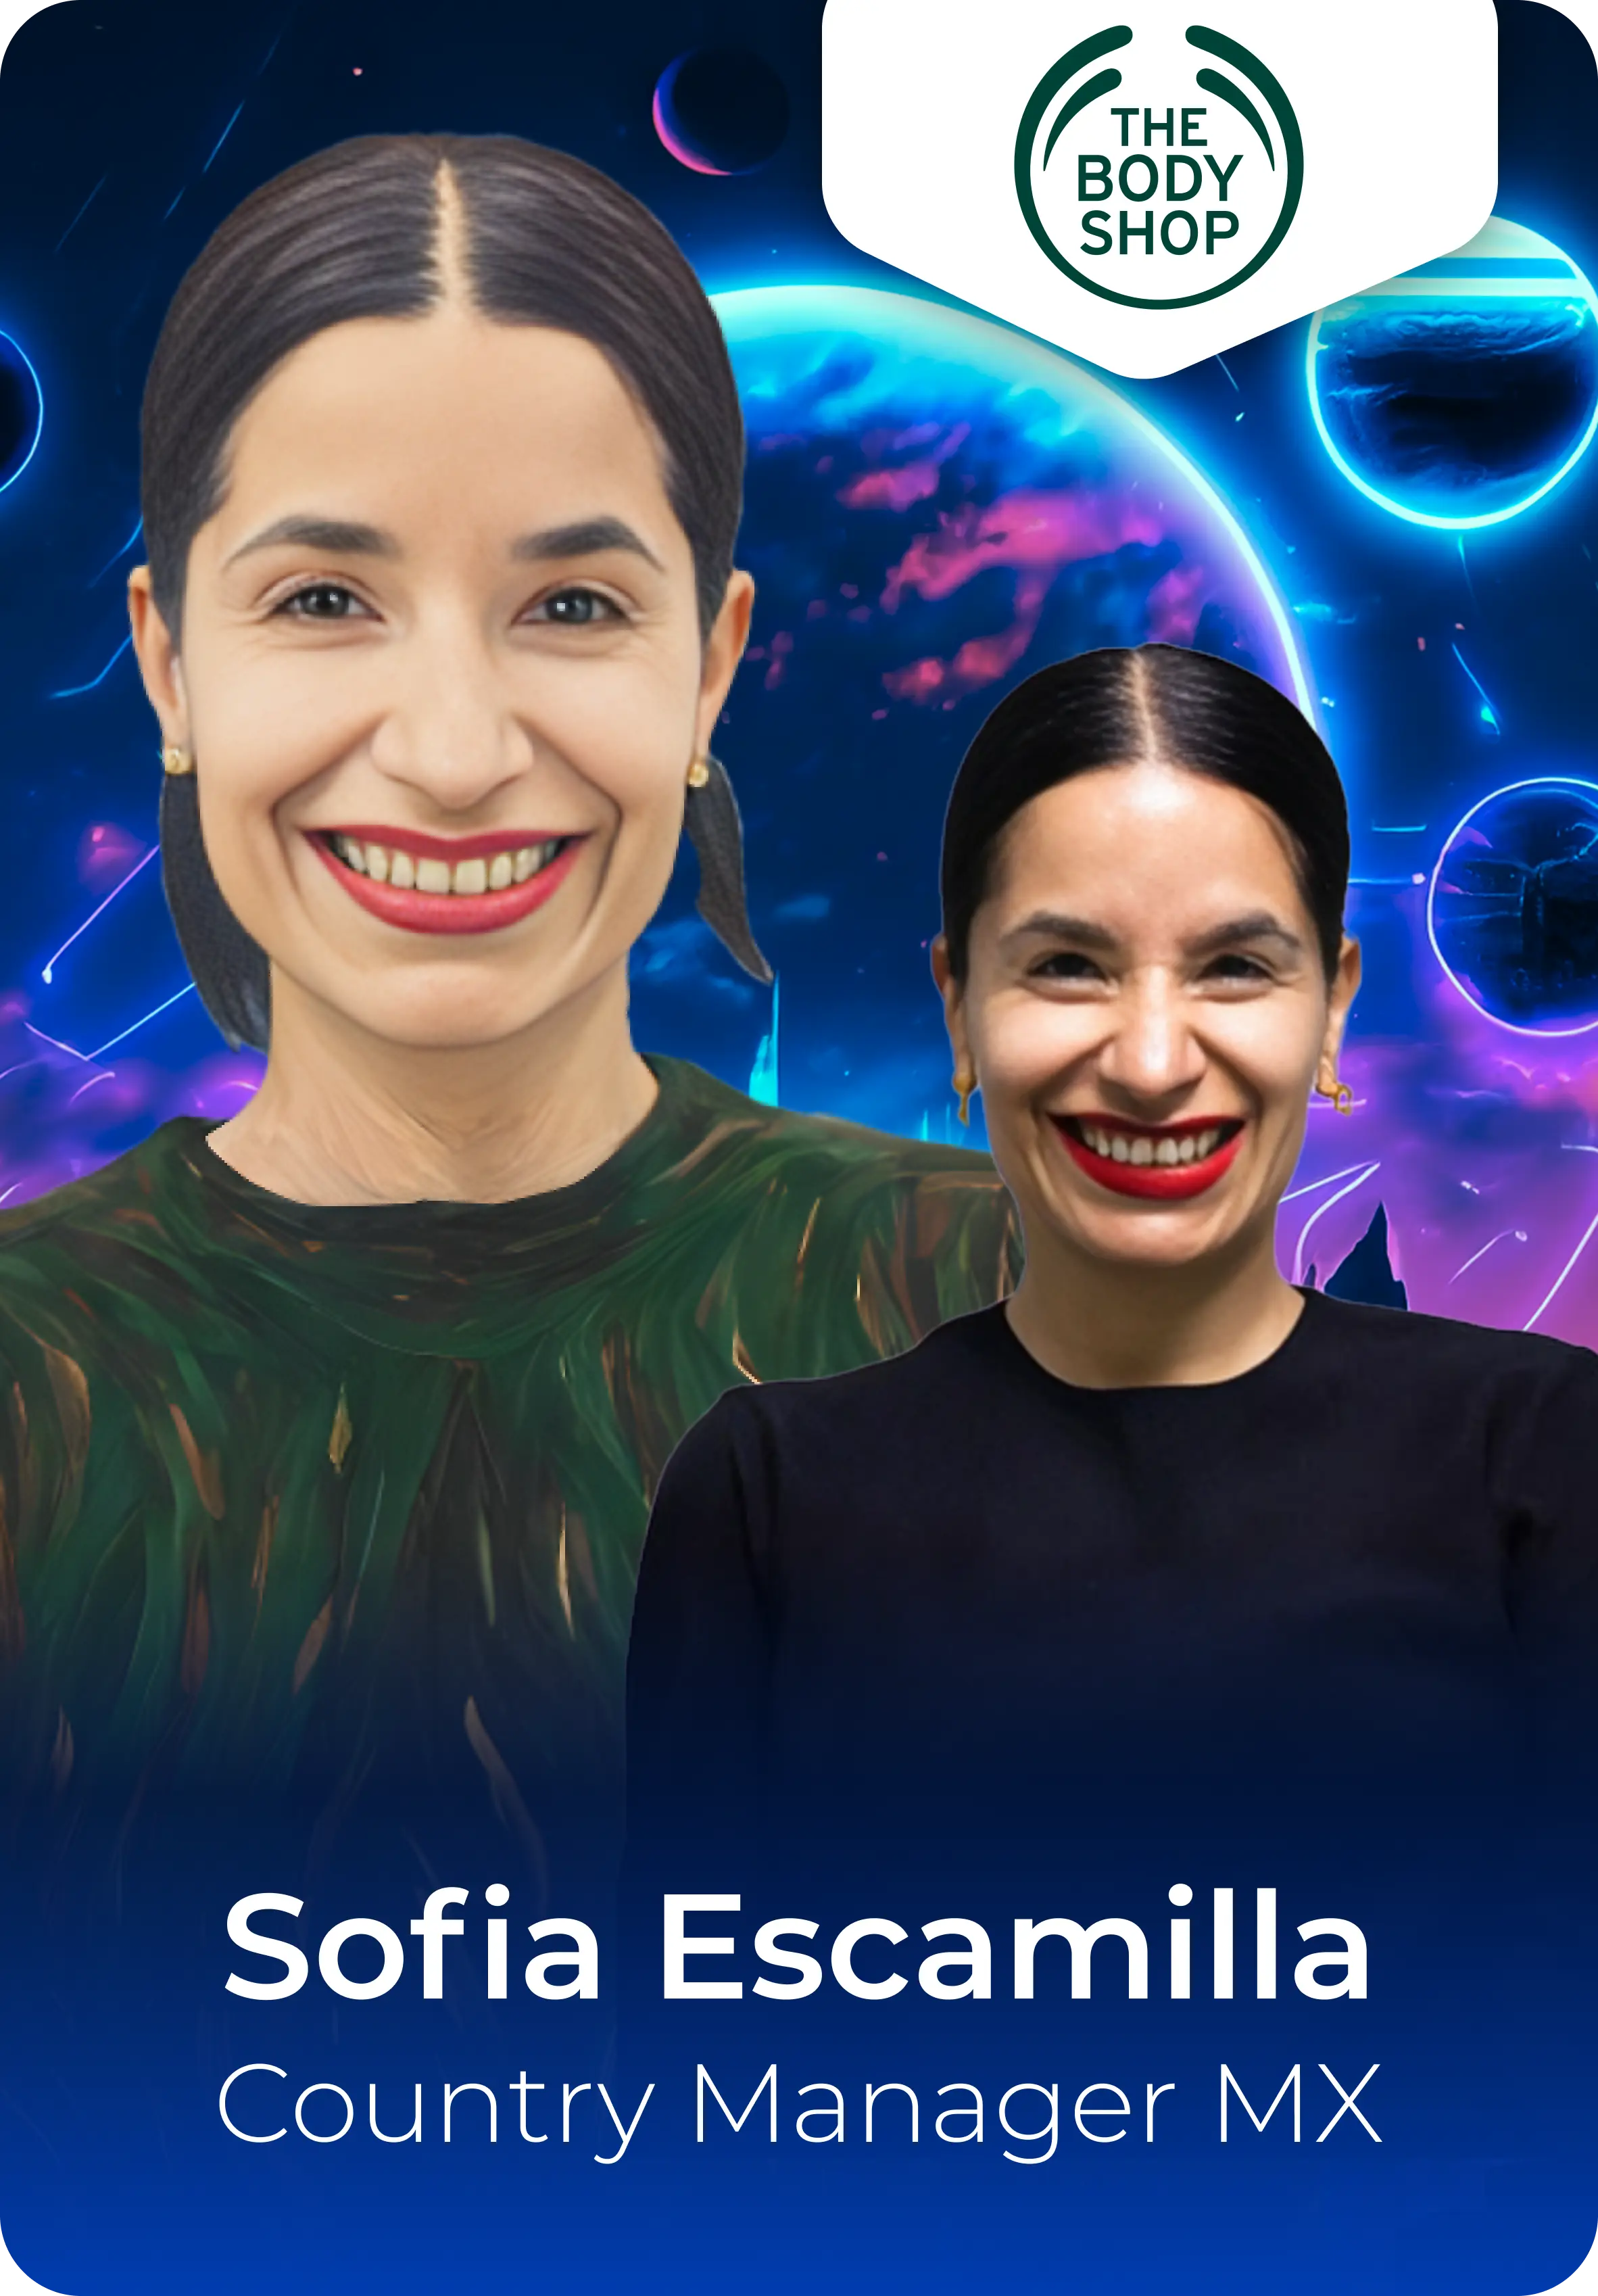 Sofia Escamilla